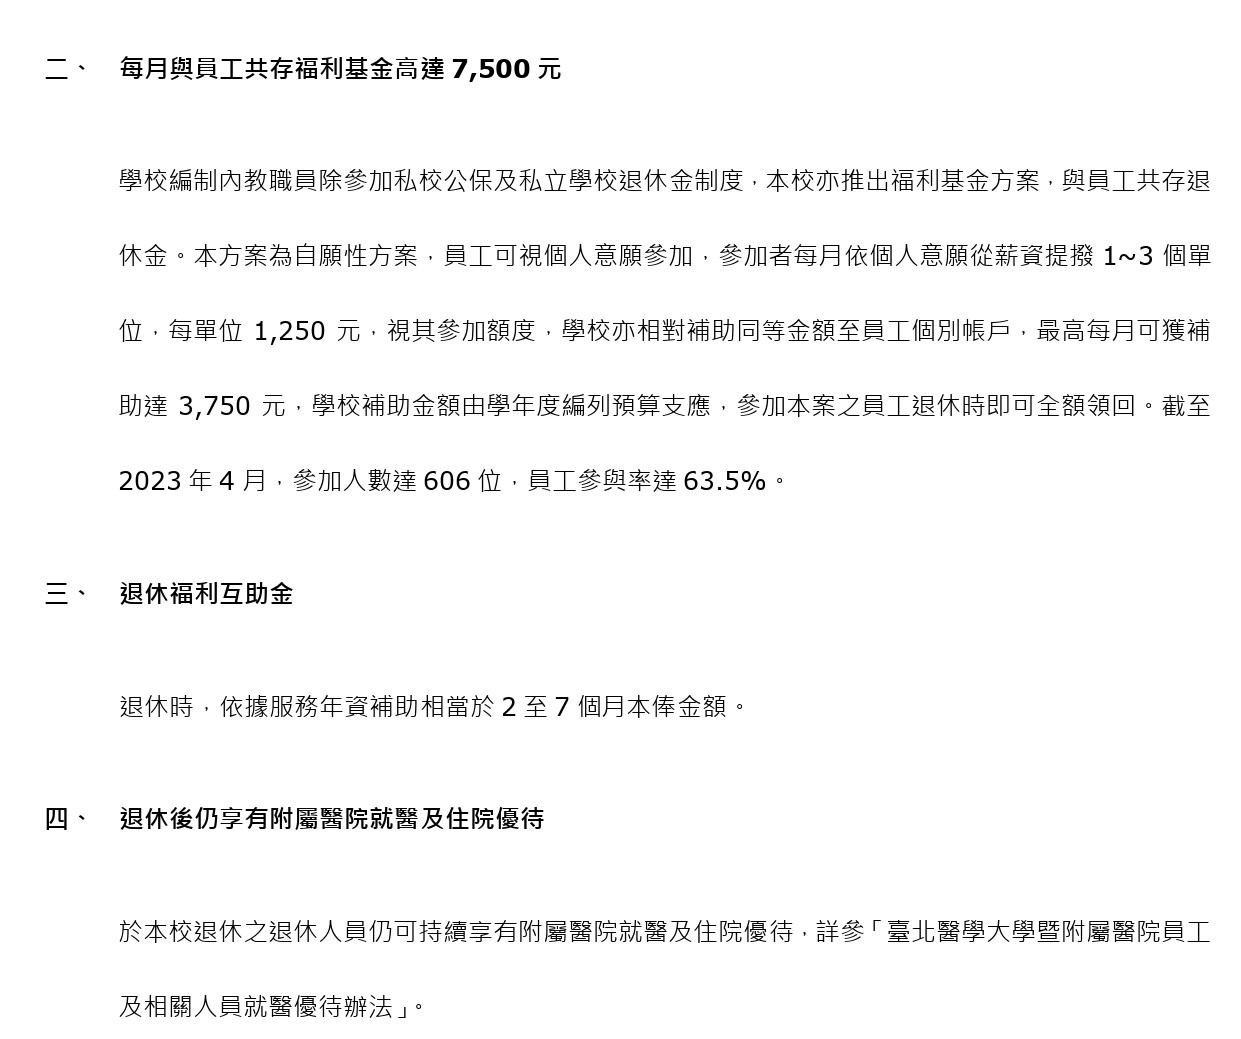 薪资及多元福利制度-for 网页- (中文) New_page-0005